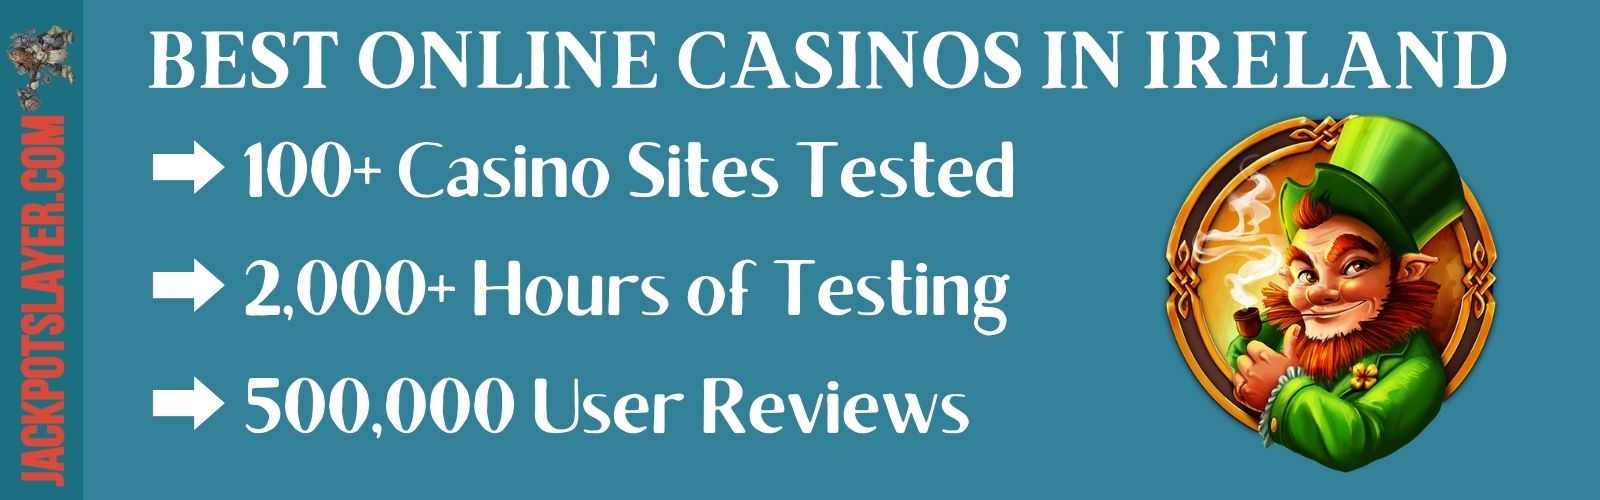 Best Online Casino Sites in Ireland